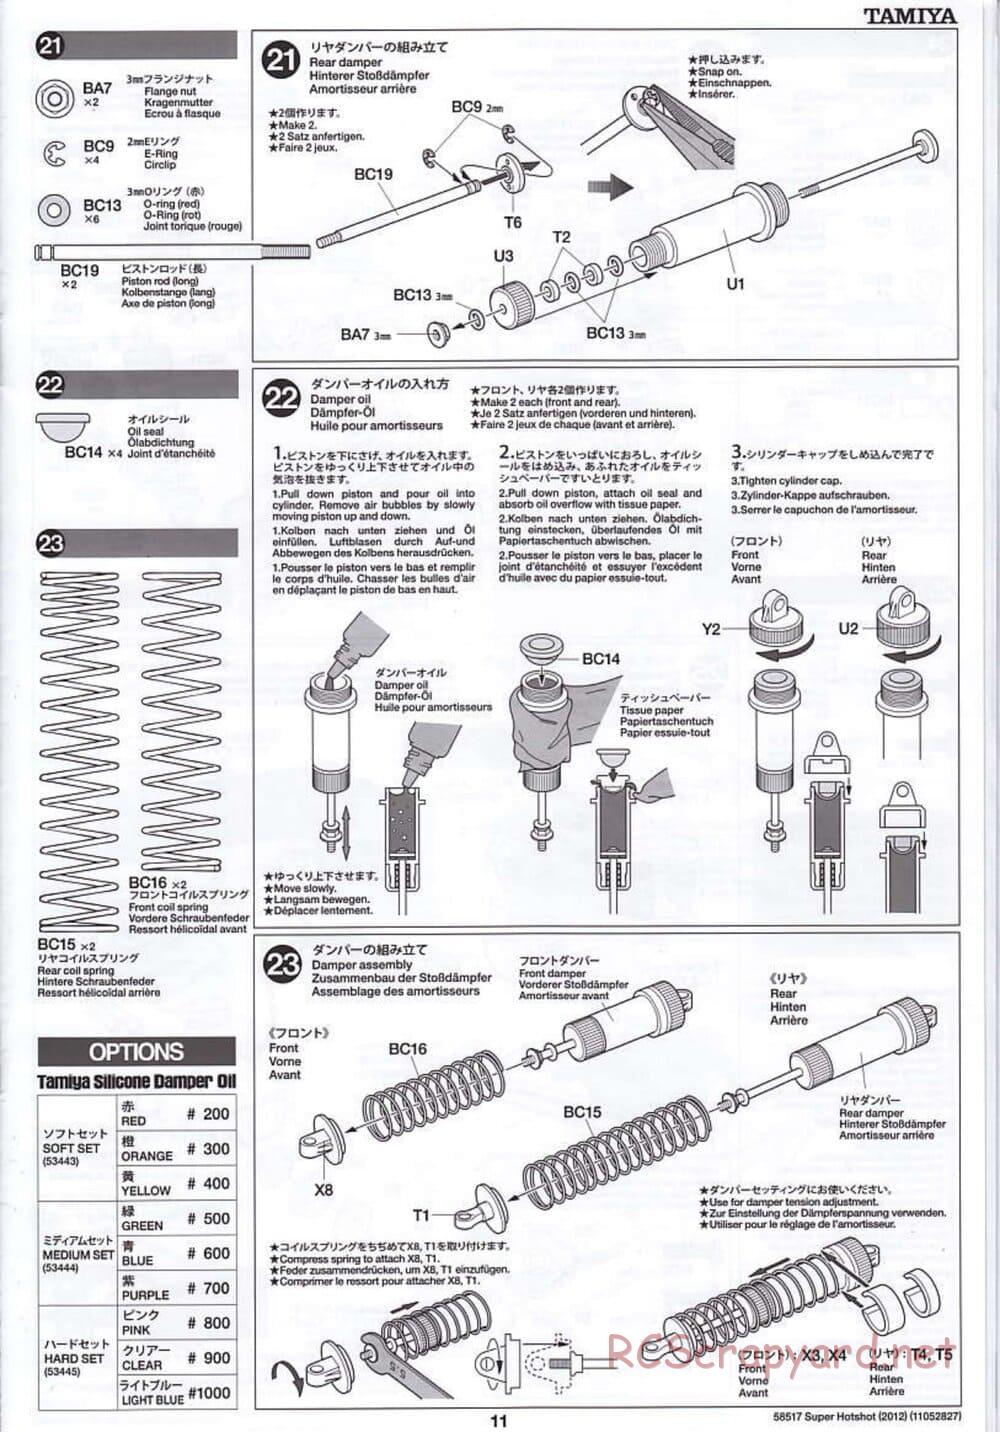 Tamiya - Super Hotshot 2012 - HS Chassis - Manual - Page 11